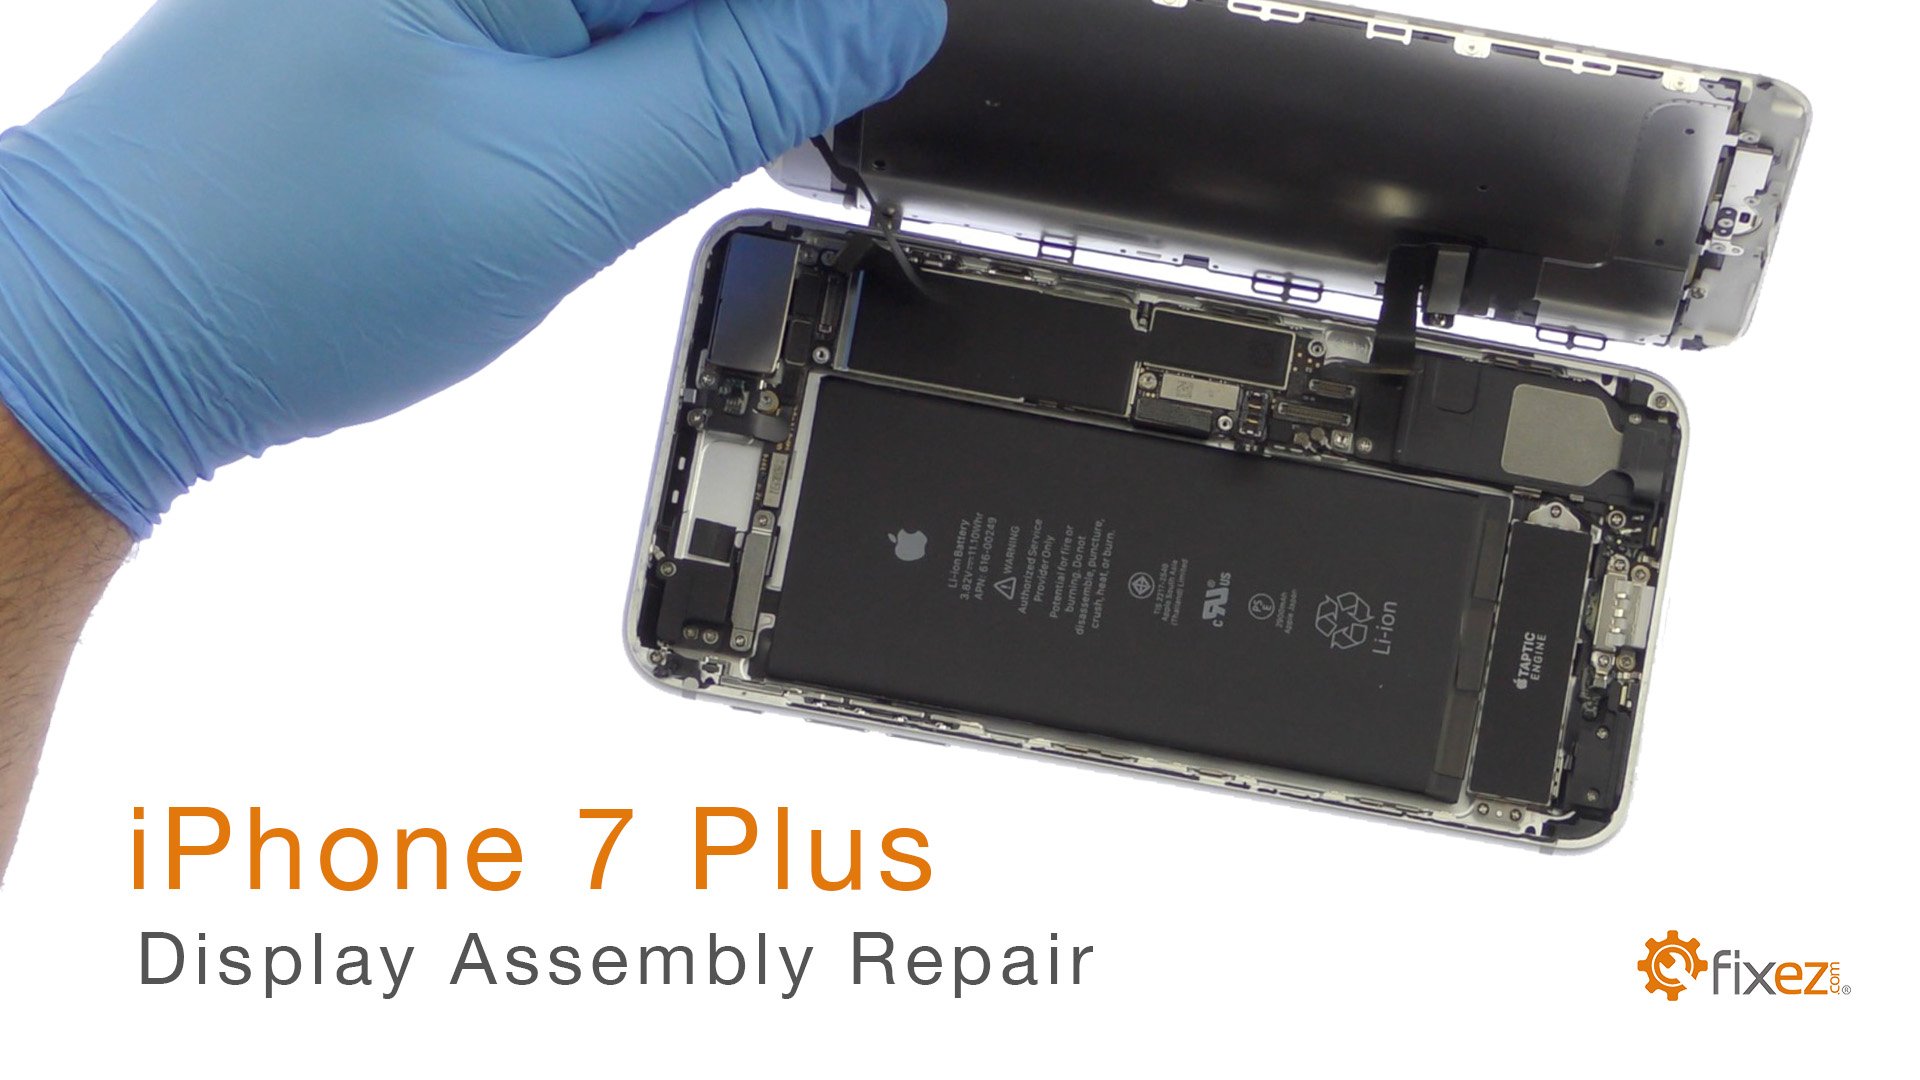 iPhone 7 Plus Display Assembly Repair